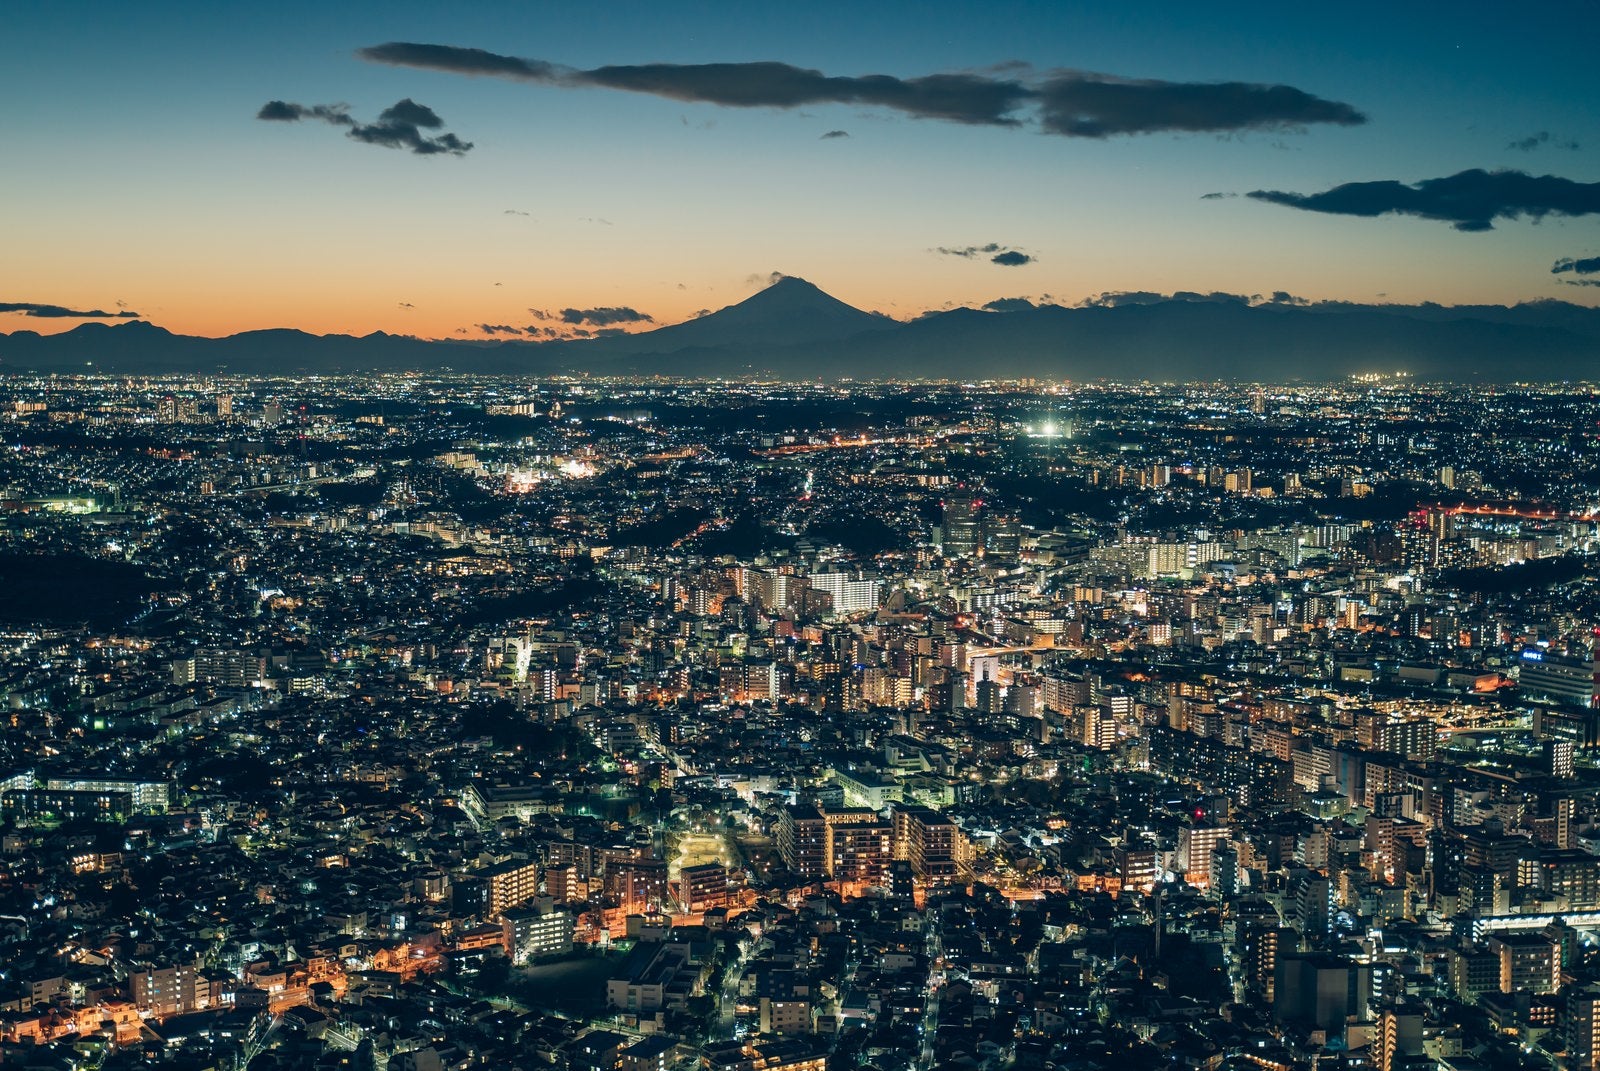 「遠くに見える富士山のシルエットと横浜の夜景」の写真